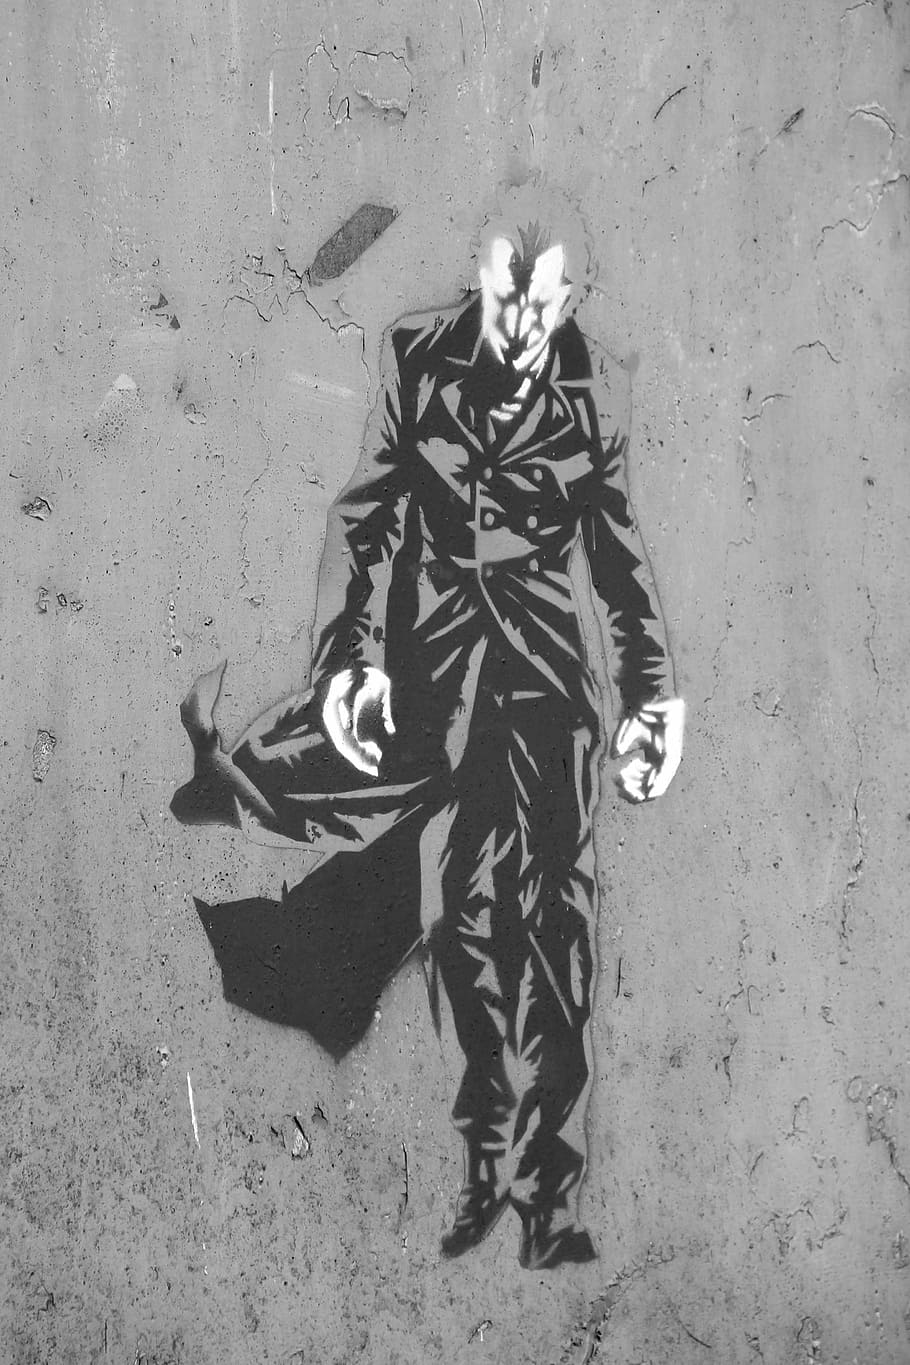 Batman, Grafite, Rua, a arte de, spray, arte de rua, lago dusia, mural, parede, arte moderna